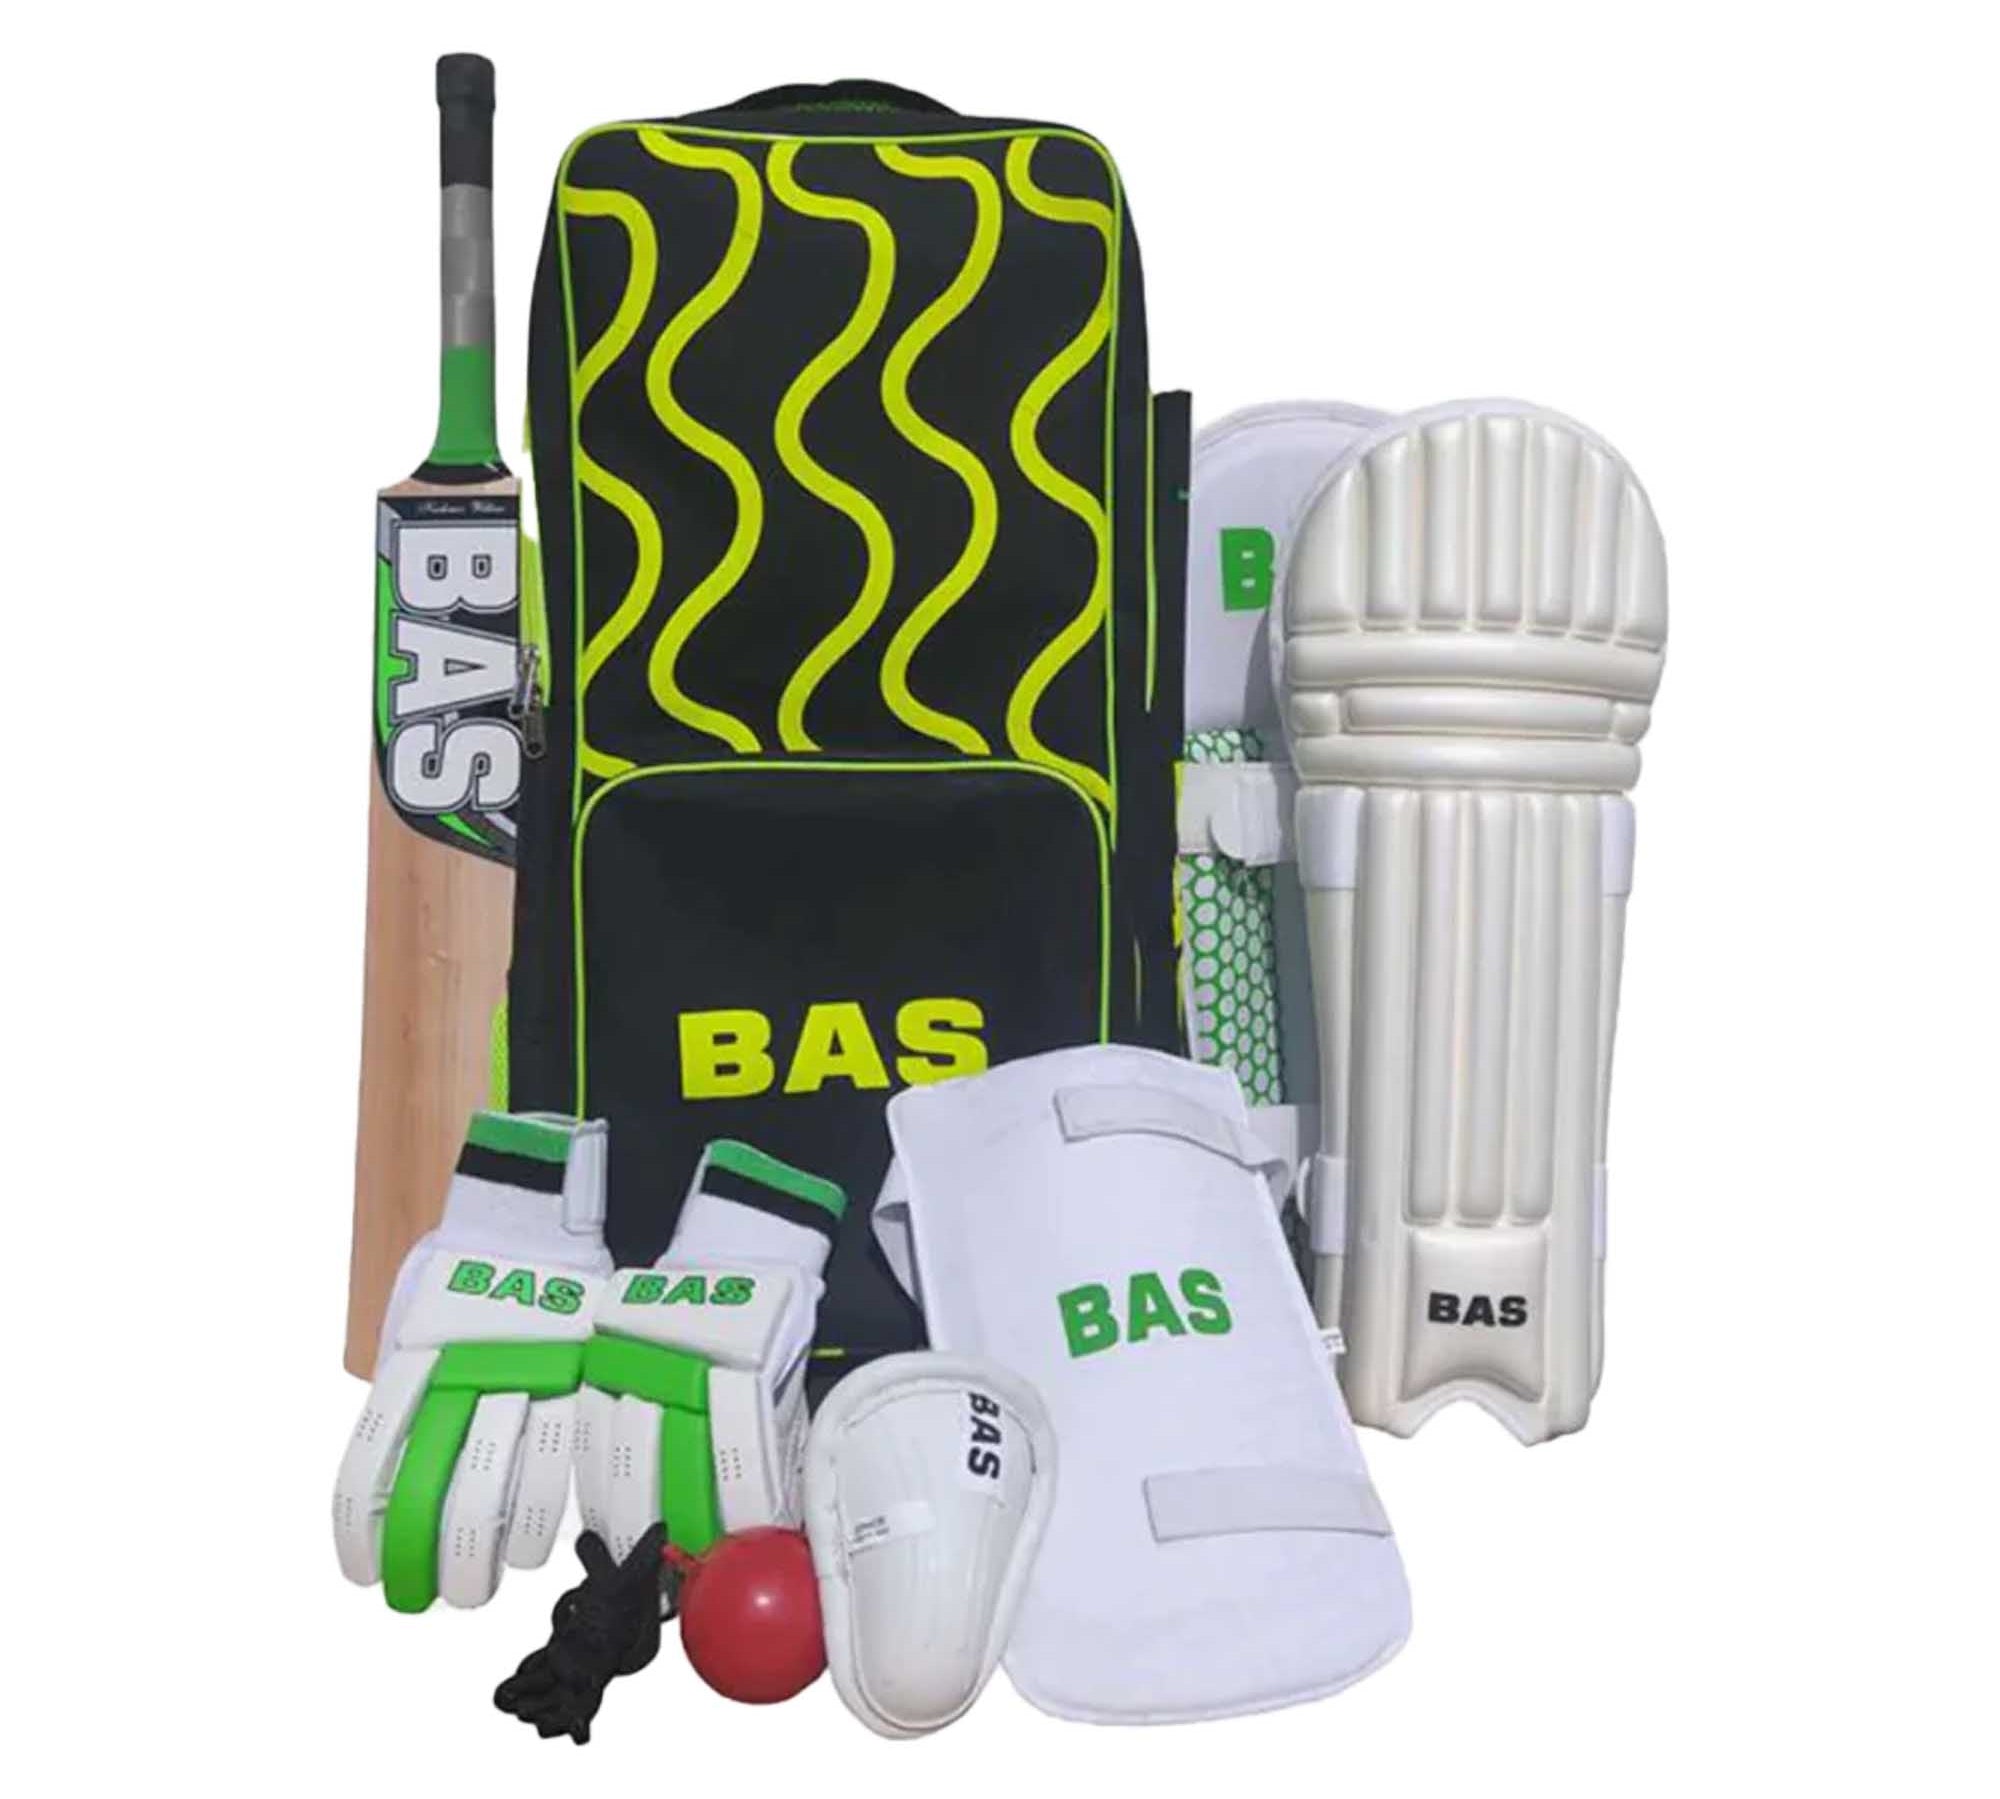 Buy Junior Cricket Set